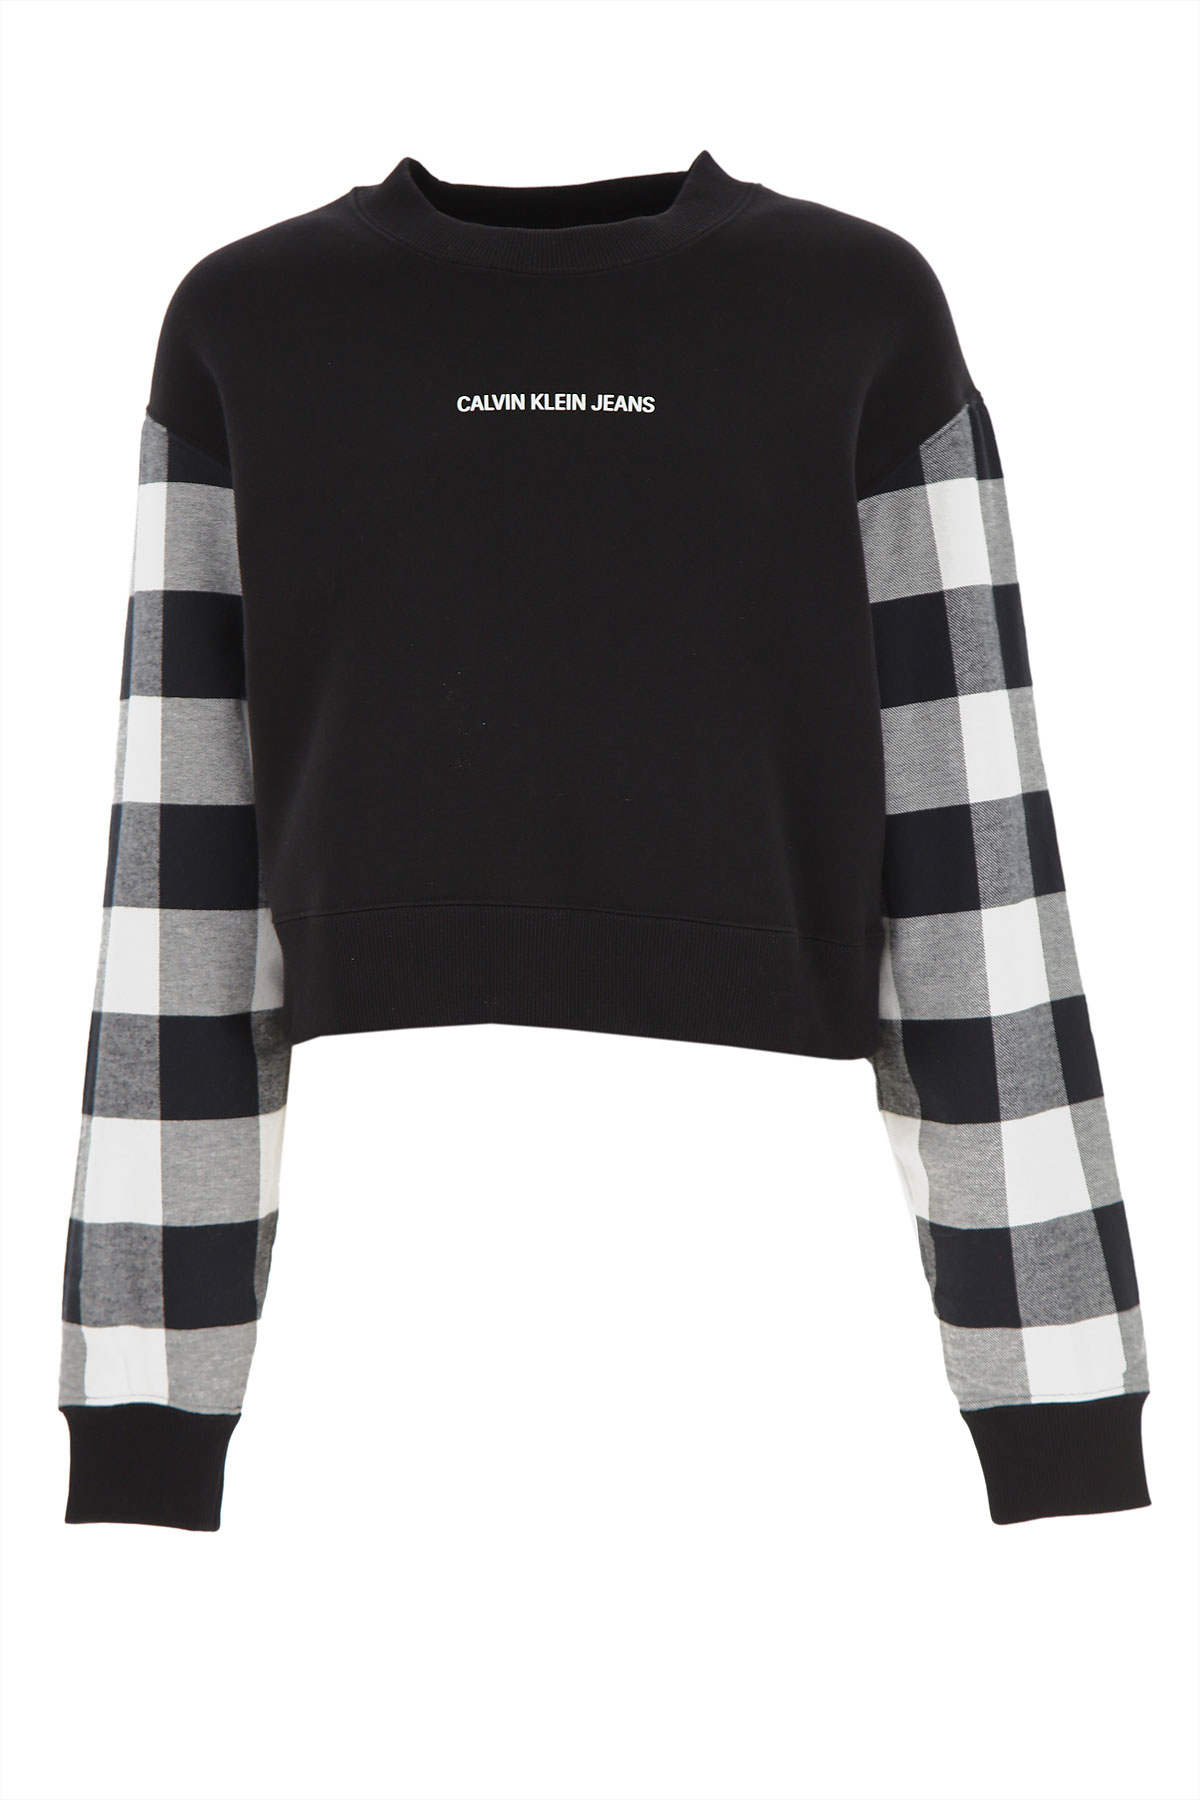 Calvin Klein Sweatshirt für Damen, Kapuzenpulli, Hoodie, Sweats Günstig im Sale, Schwarz, Baumwolle, 2017, 44 M